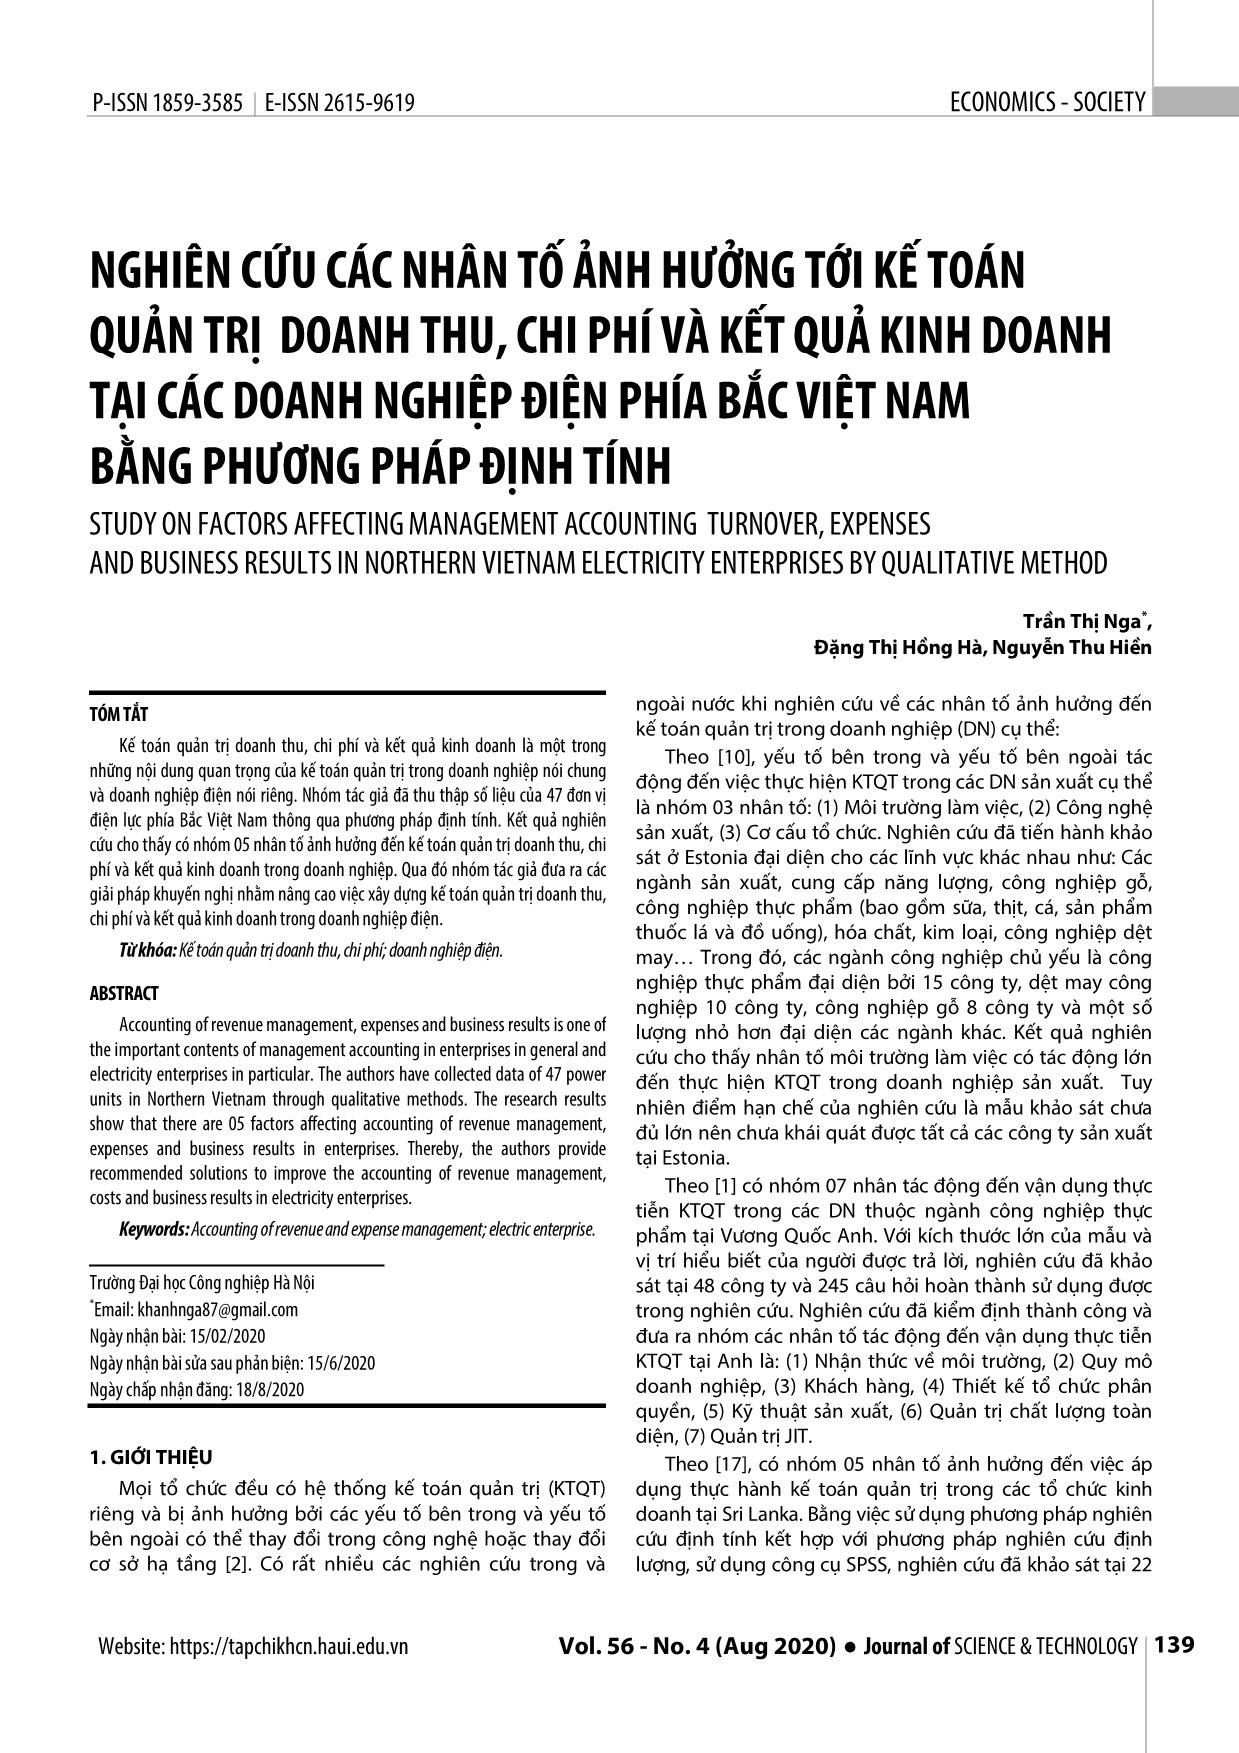 Nghiên cứu các nhân tố ảnh hưởng tới kế toán quản trị doanh thu, chi phí và kết quả kinh doanh tại các doanh nghiệp điện phía Bắc Việt Nam bằng phương pháp định tính trang 1